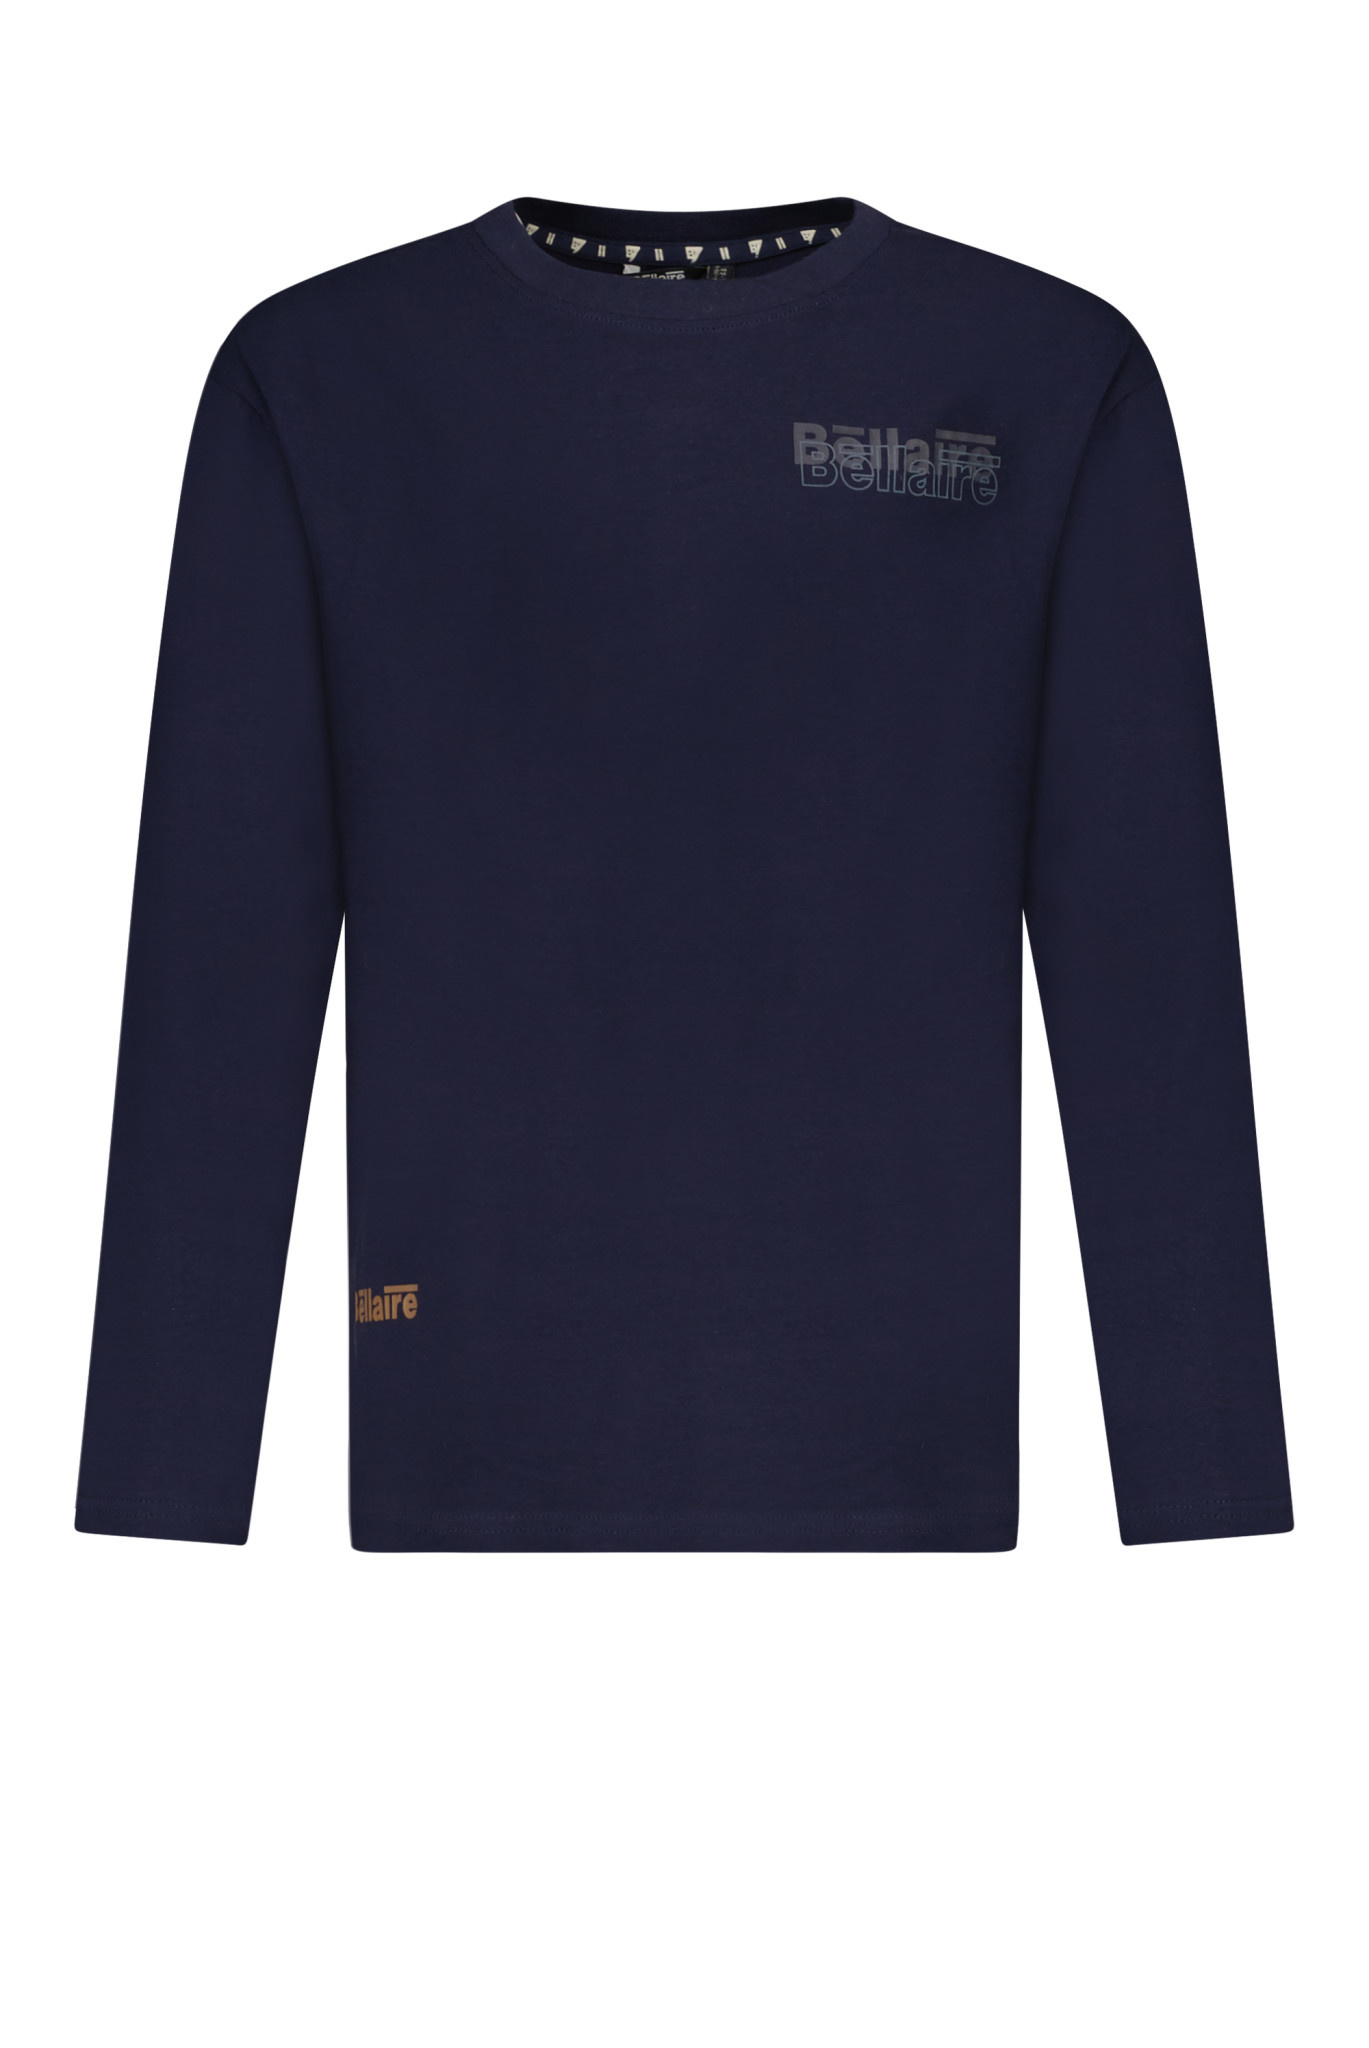 Afbeelding van Bellaire Jongens shirt met klein logo blazer